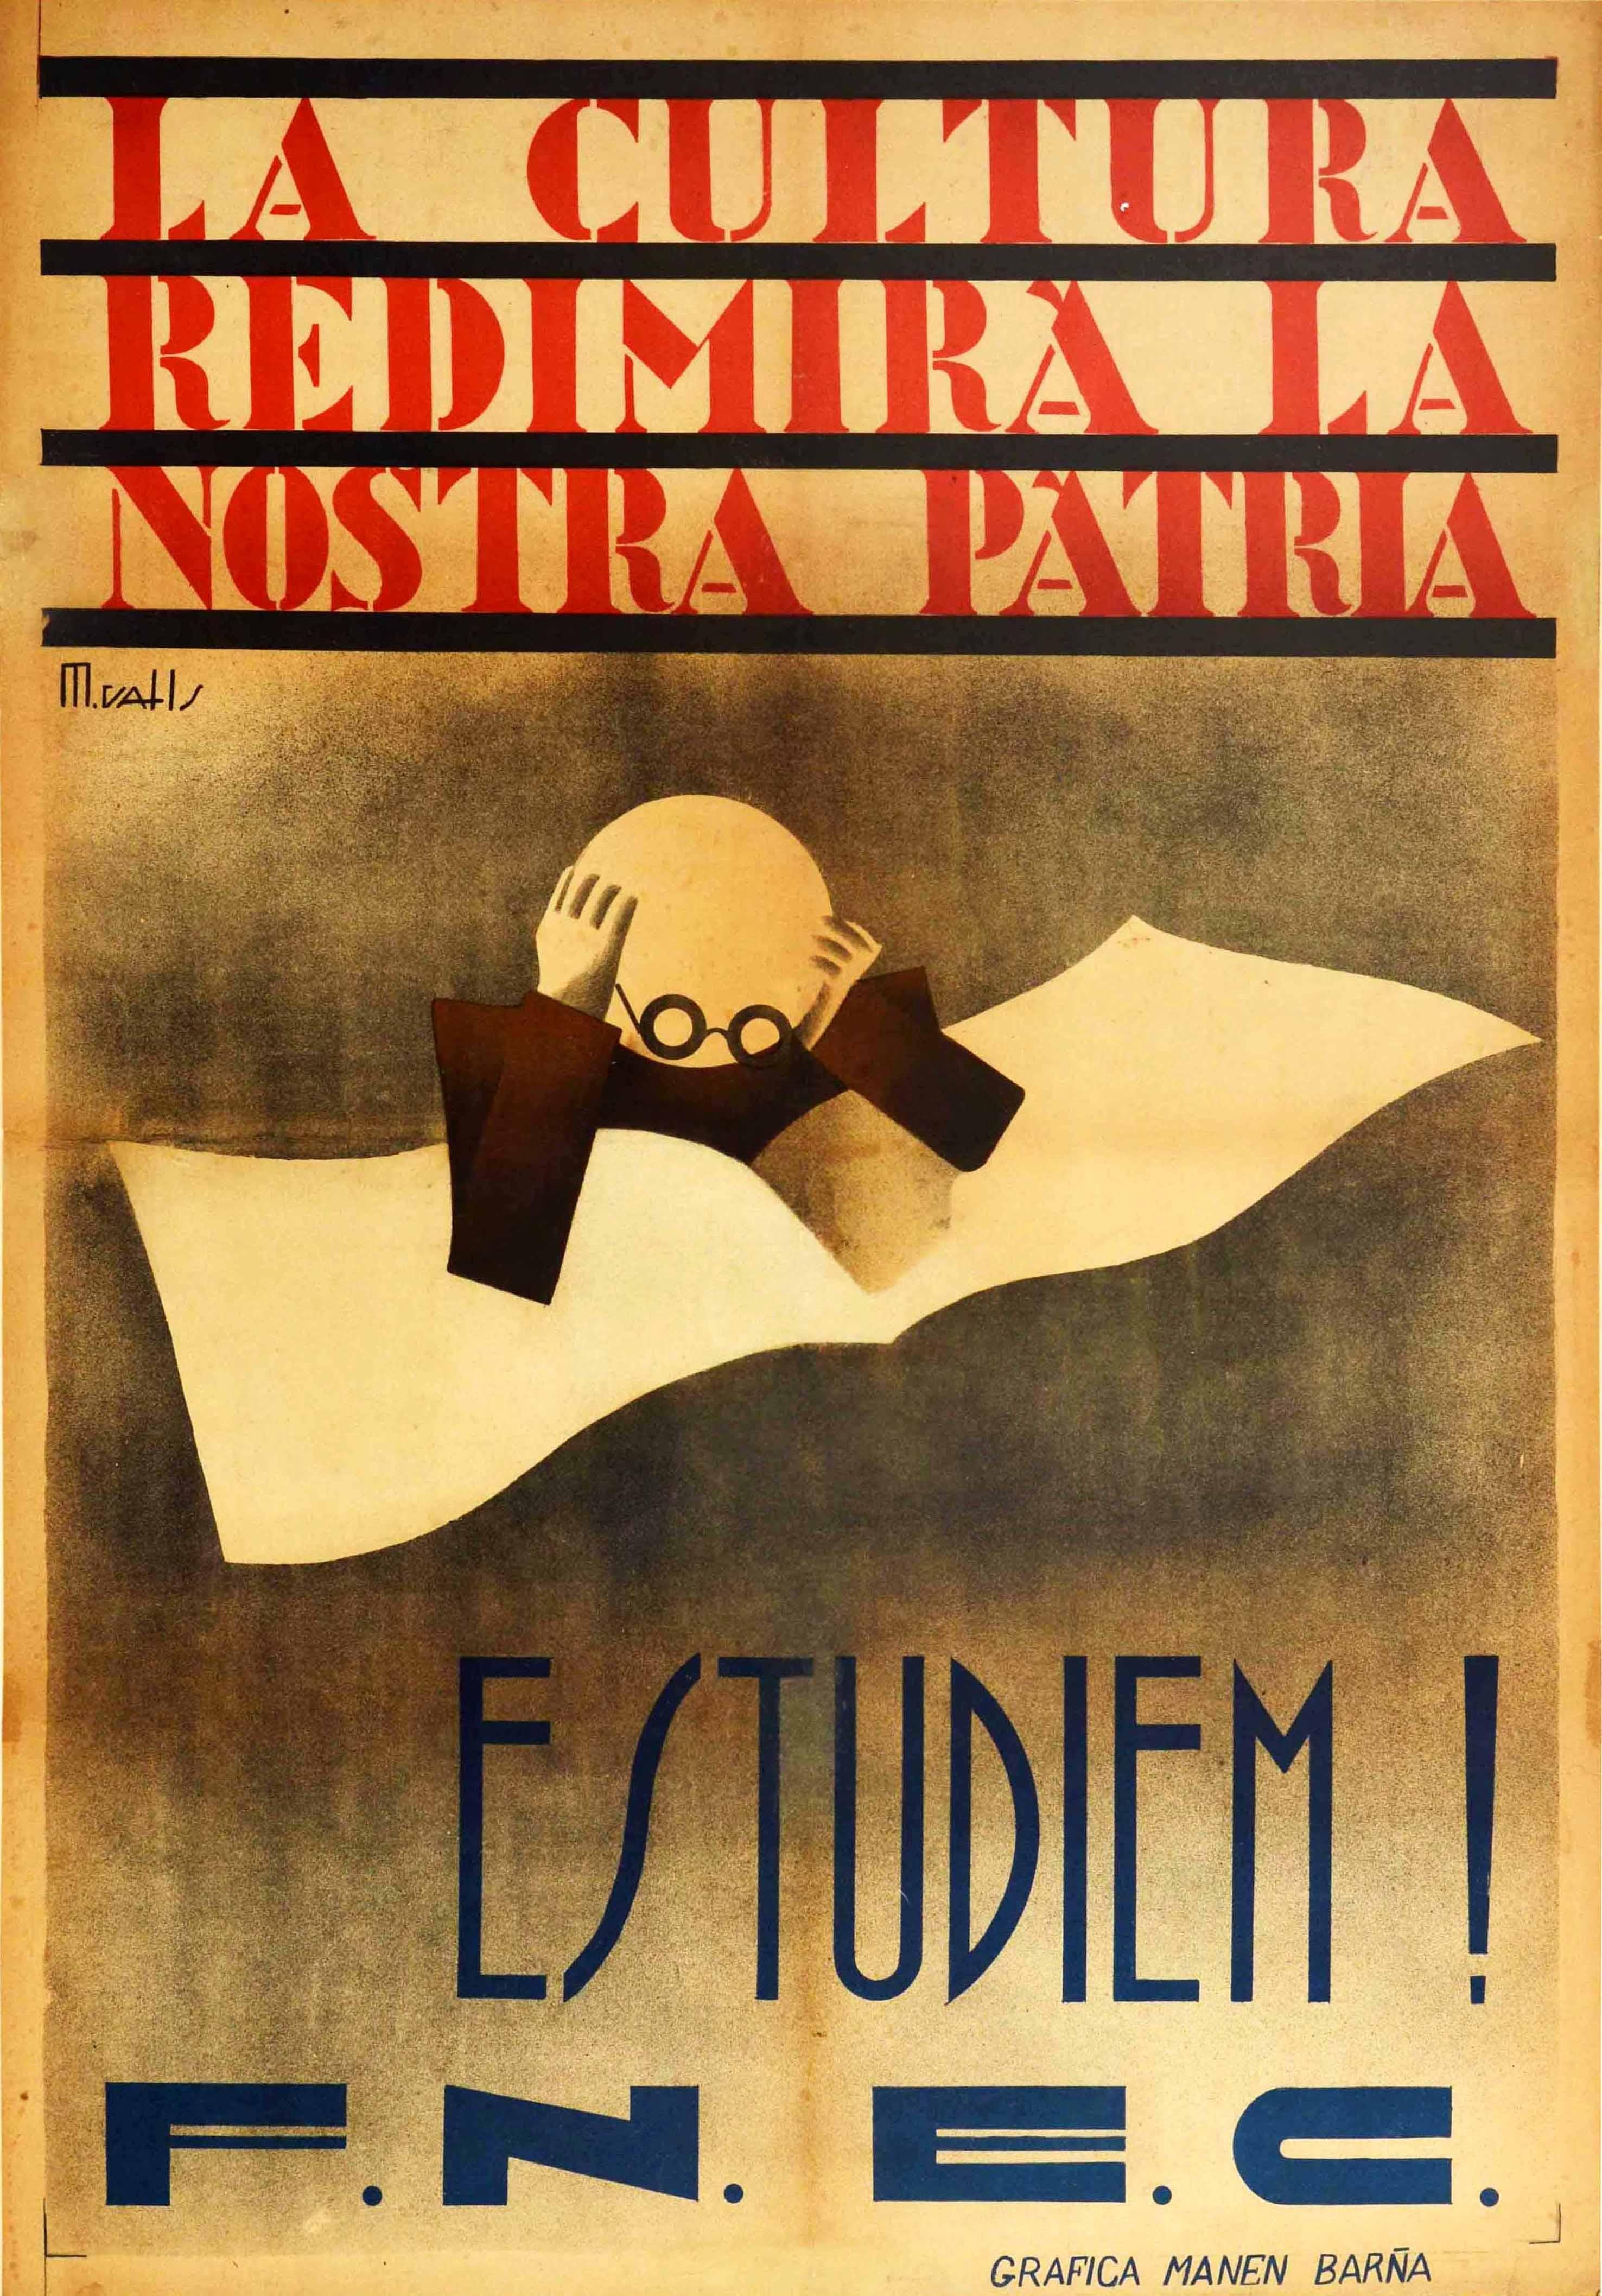 Affiche rétro originale, Student Culture Our Homeland, Let's Study, Guerre de Sécession, Espagne